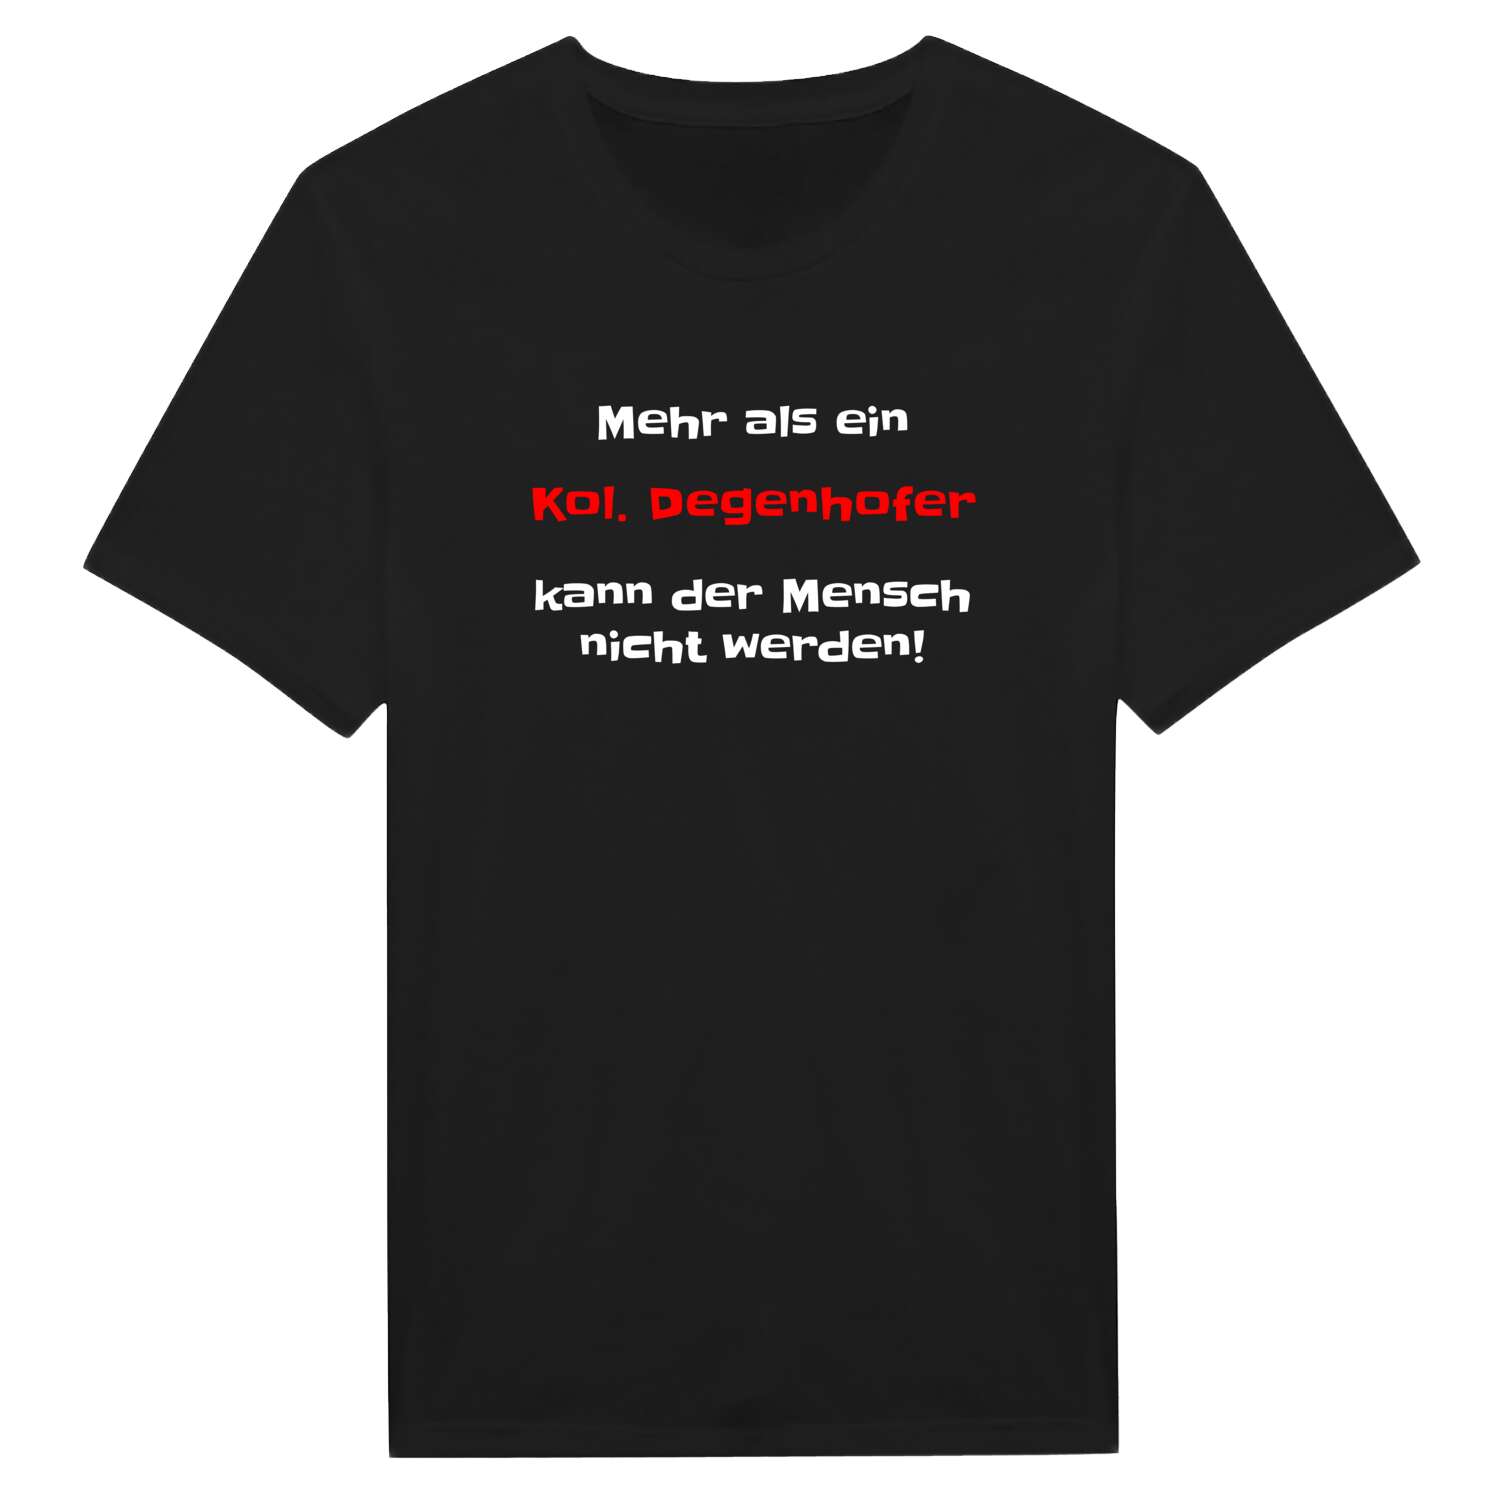 Kol. Degenhof T-Shirt »Mehr als ein«